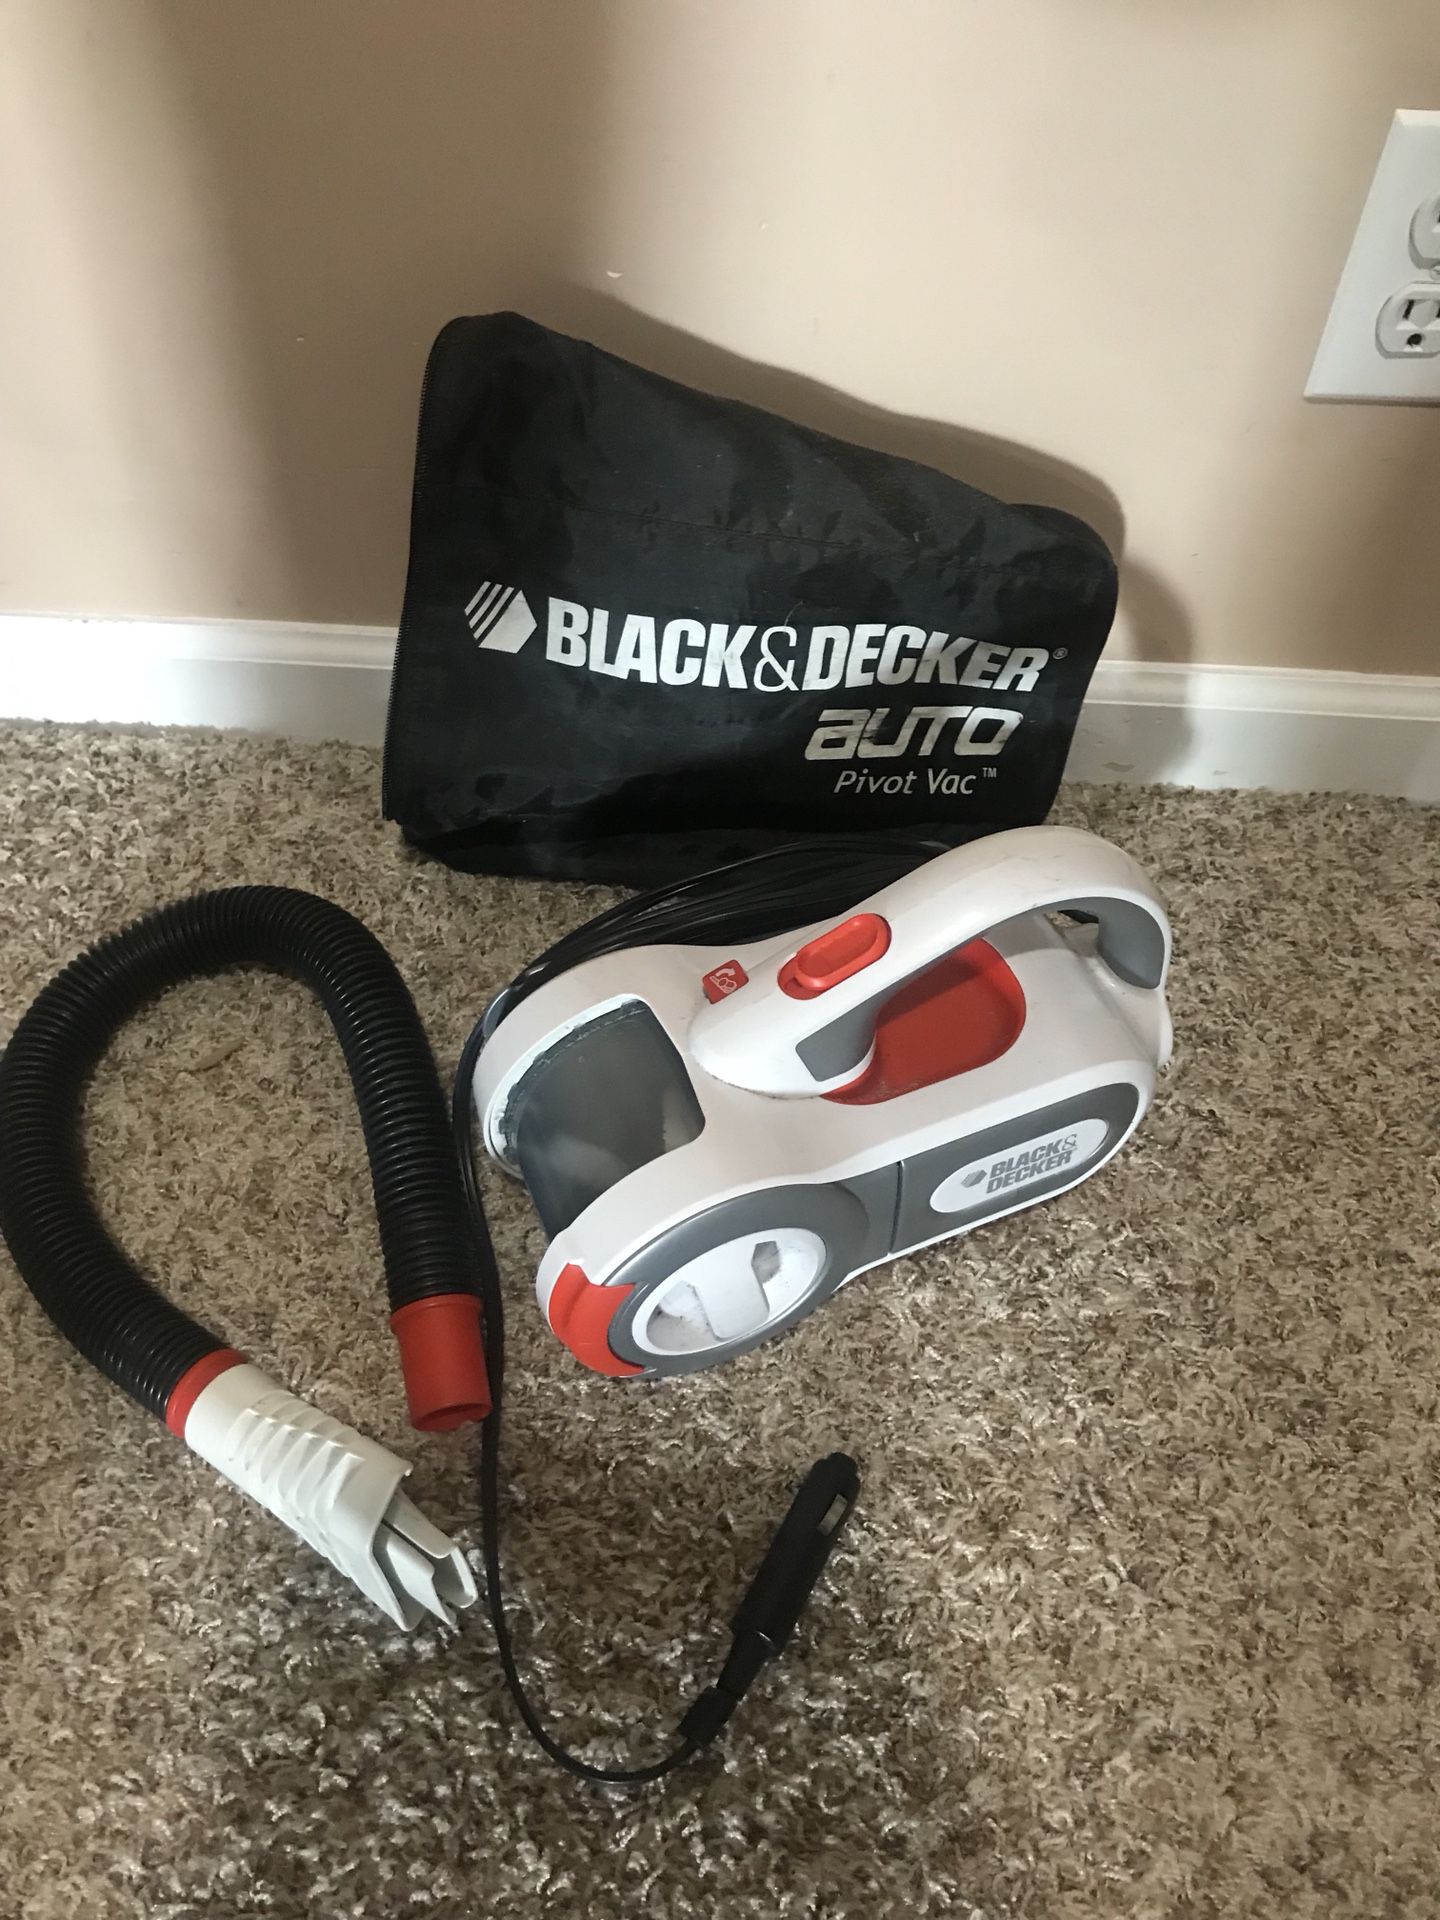 Black and decker auto vacuum